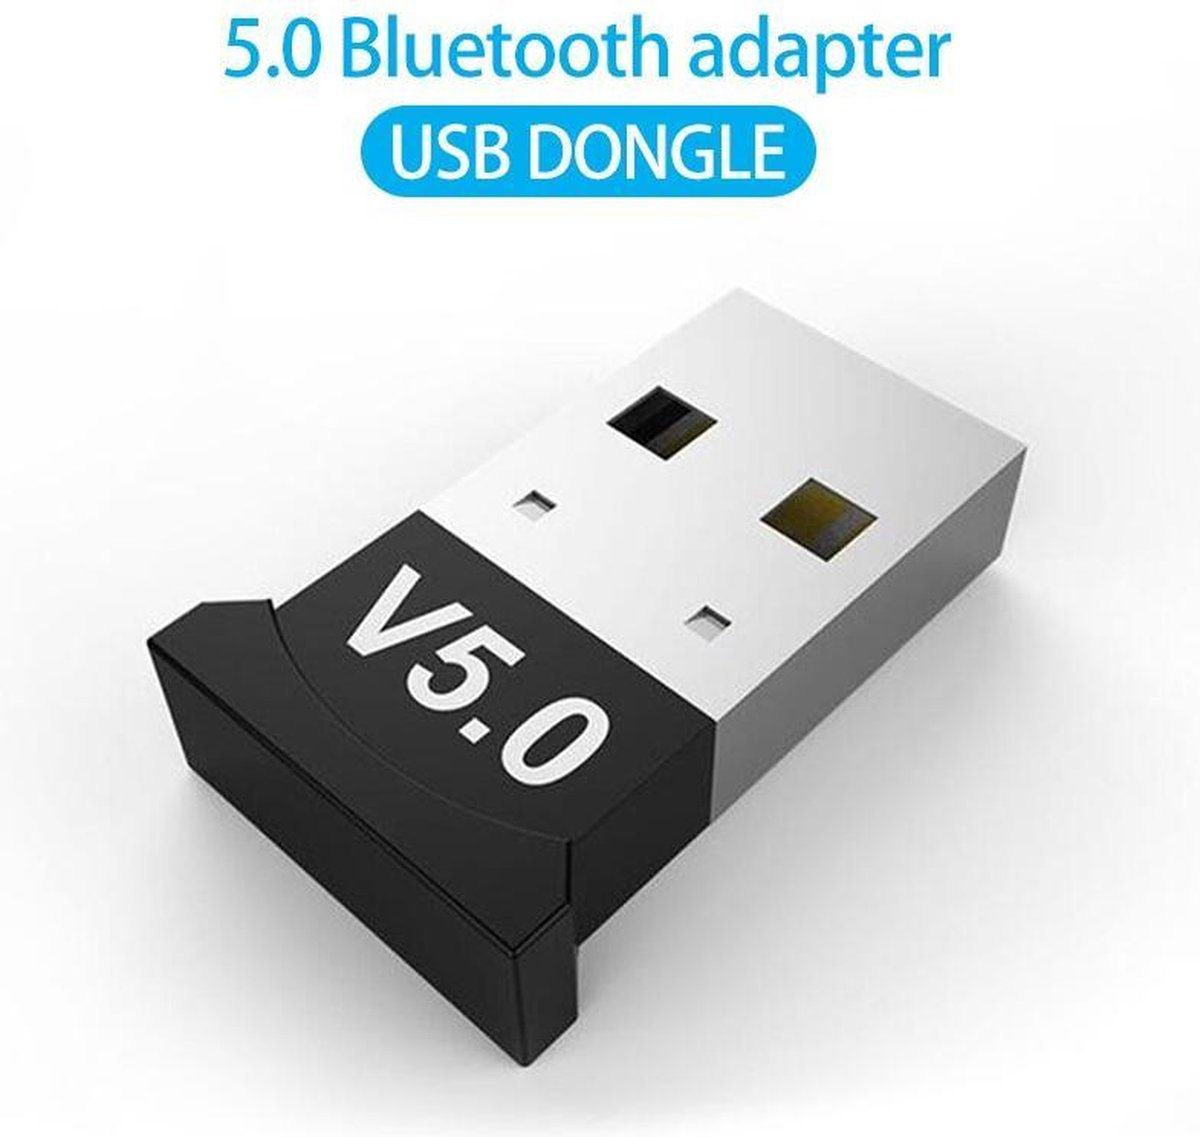 adaptateur usb bluetooth 5.3 recepteur audio usb emetteur bluetooth 5.3  dongle adaptador pour pc portable adaptateur de haut-parleur sans fil  (v5.3)